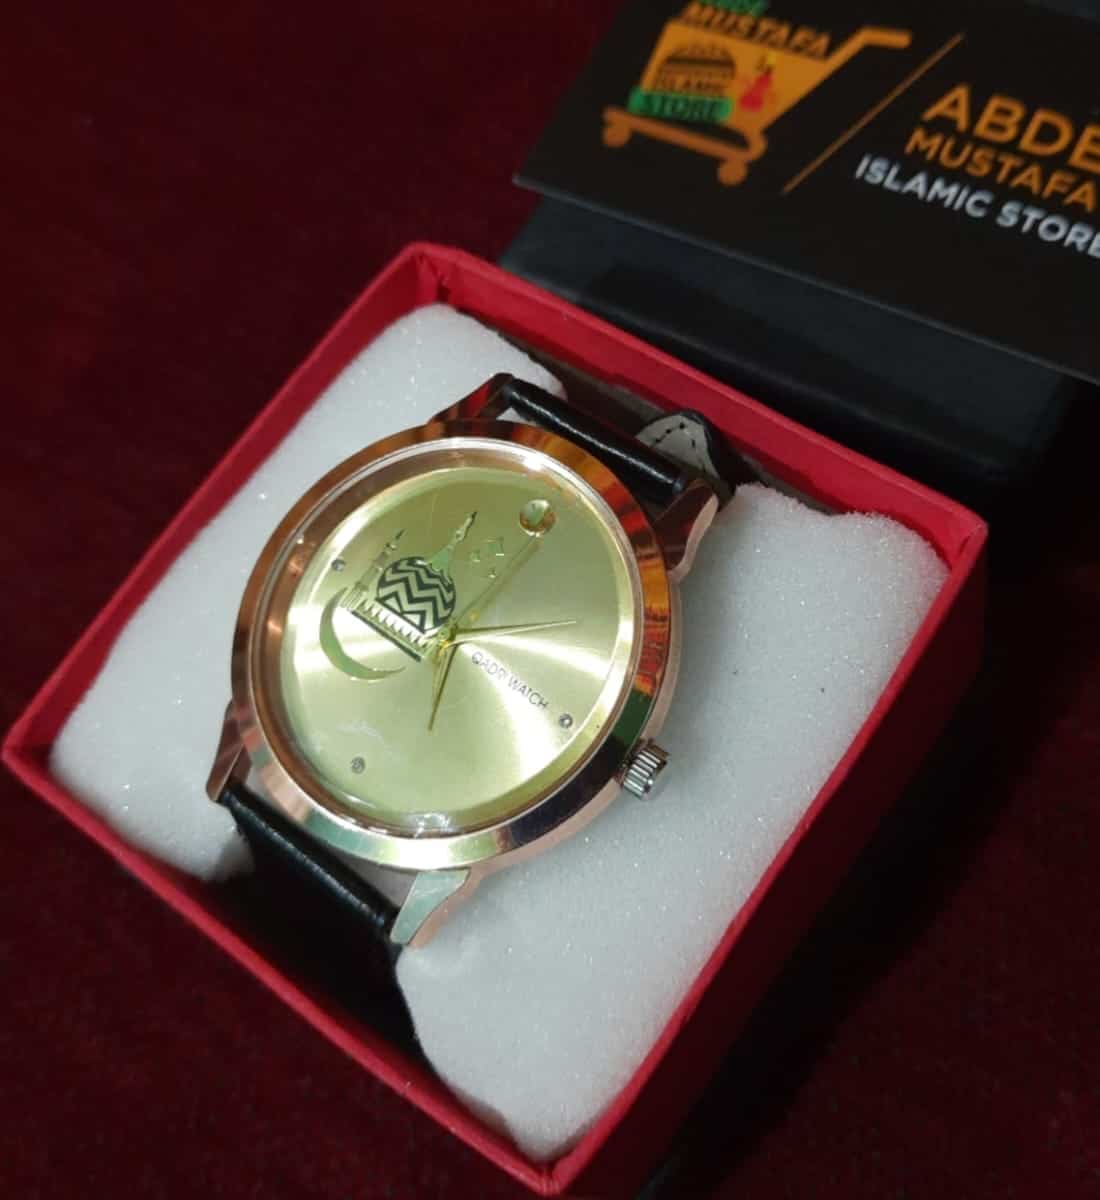 Gumbad E Raza Watch Exclusive Design By Abde Mustafa Store (Model No.1101)